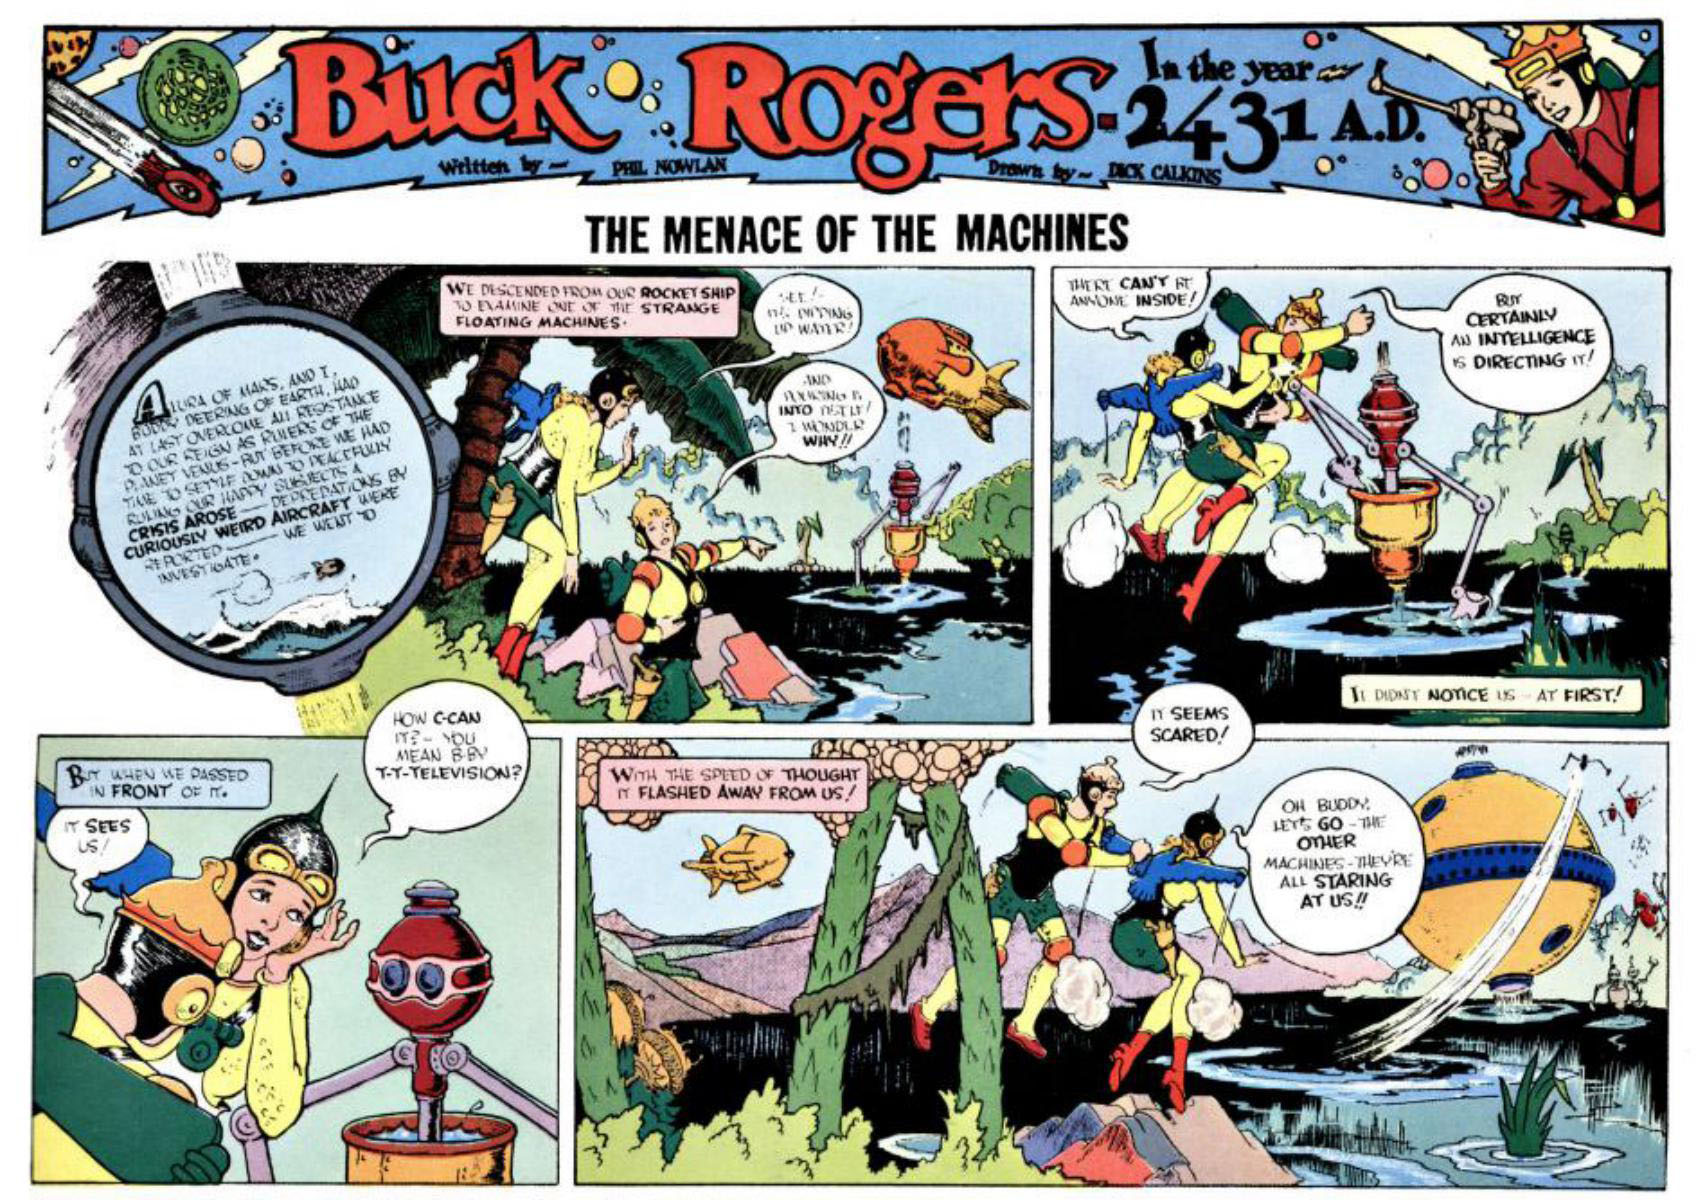 Buck Rogers - 1931